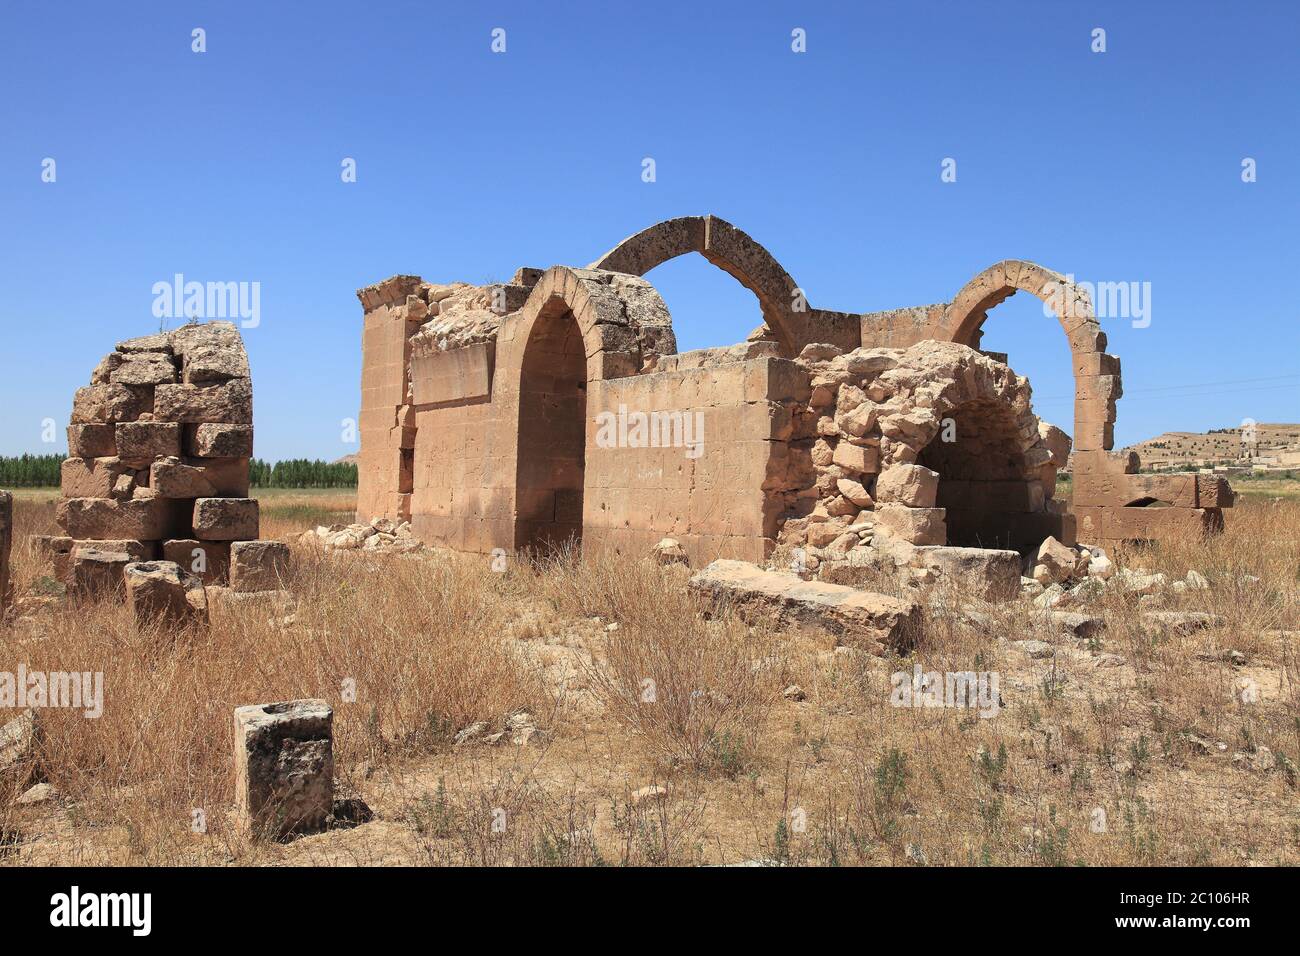 Necm Castle befindet sich in Manbij, Syrien. Das Schloss wurde im 100. Jahr vor Christus erbaut. Historische Gebäude Ruinen in der Nähe der Burg. Stockfoto